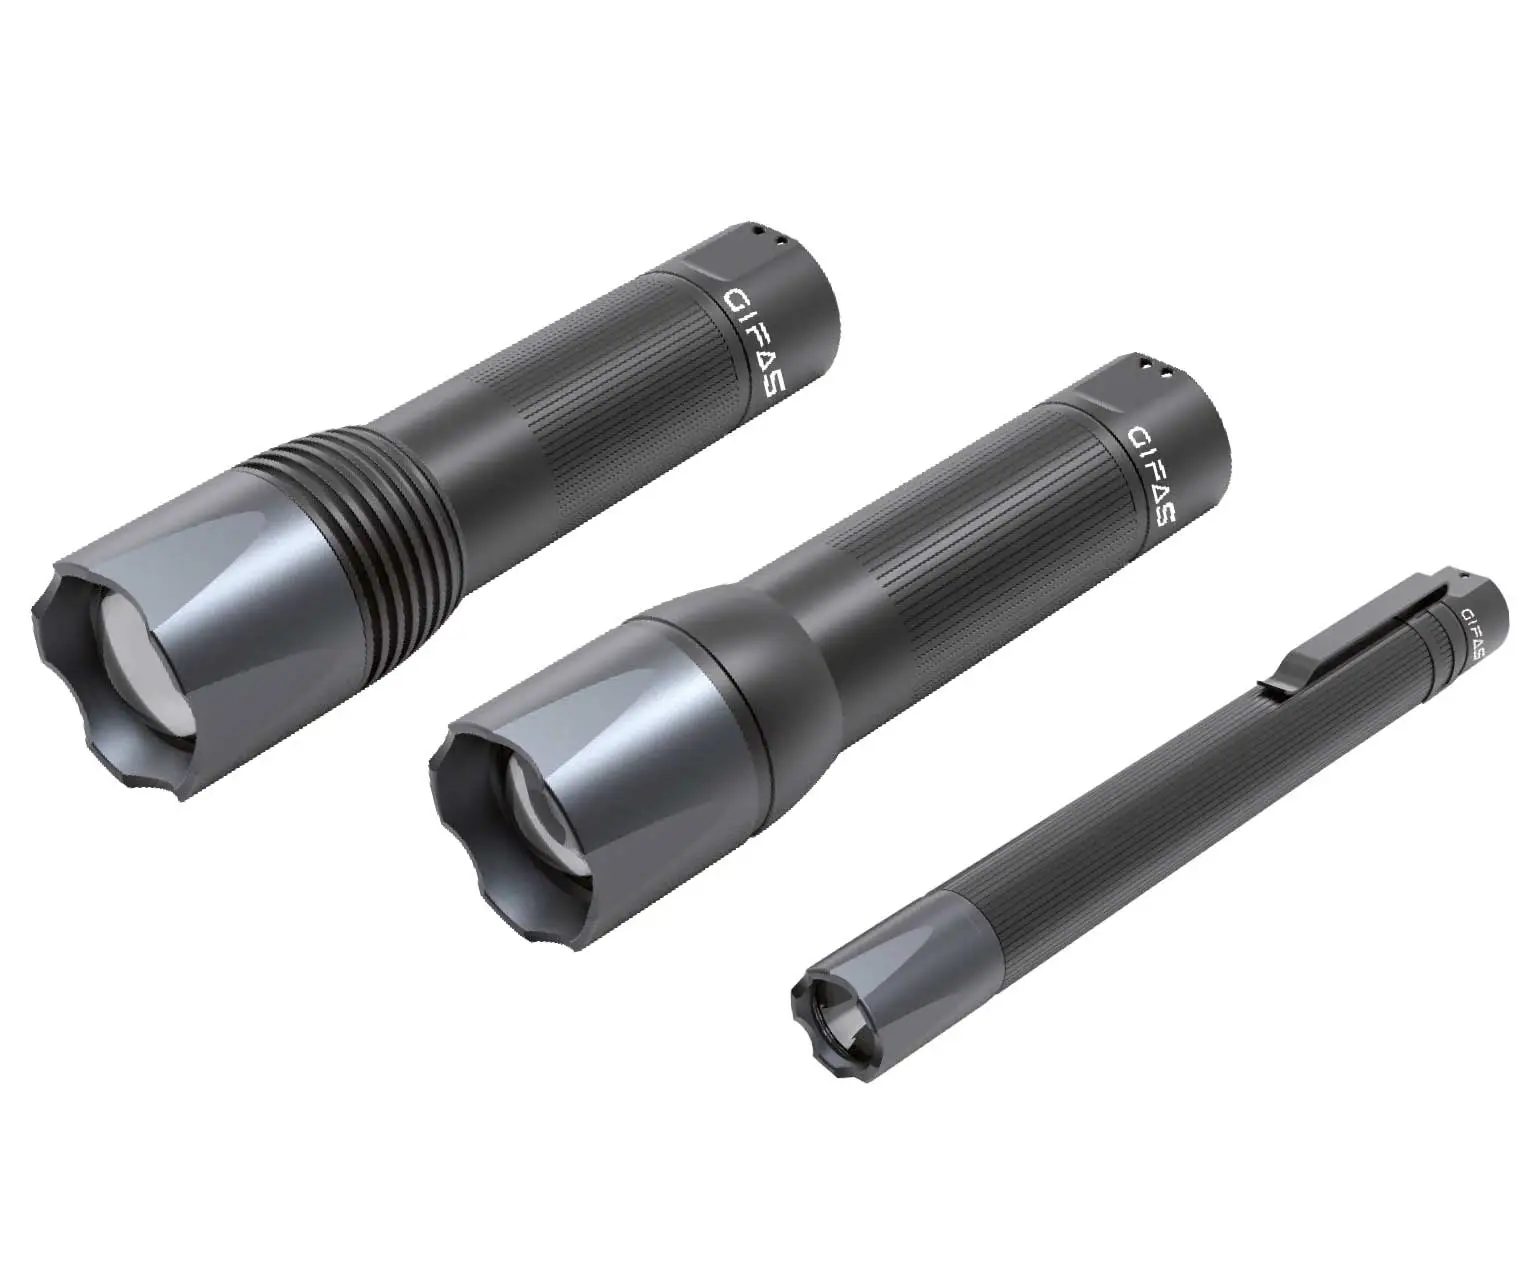 Drei graue Batterie Taschenlampen aus Aluminium der Serie Torch S mit optischem Fokus und Nothammer-Leuchtenkopf